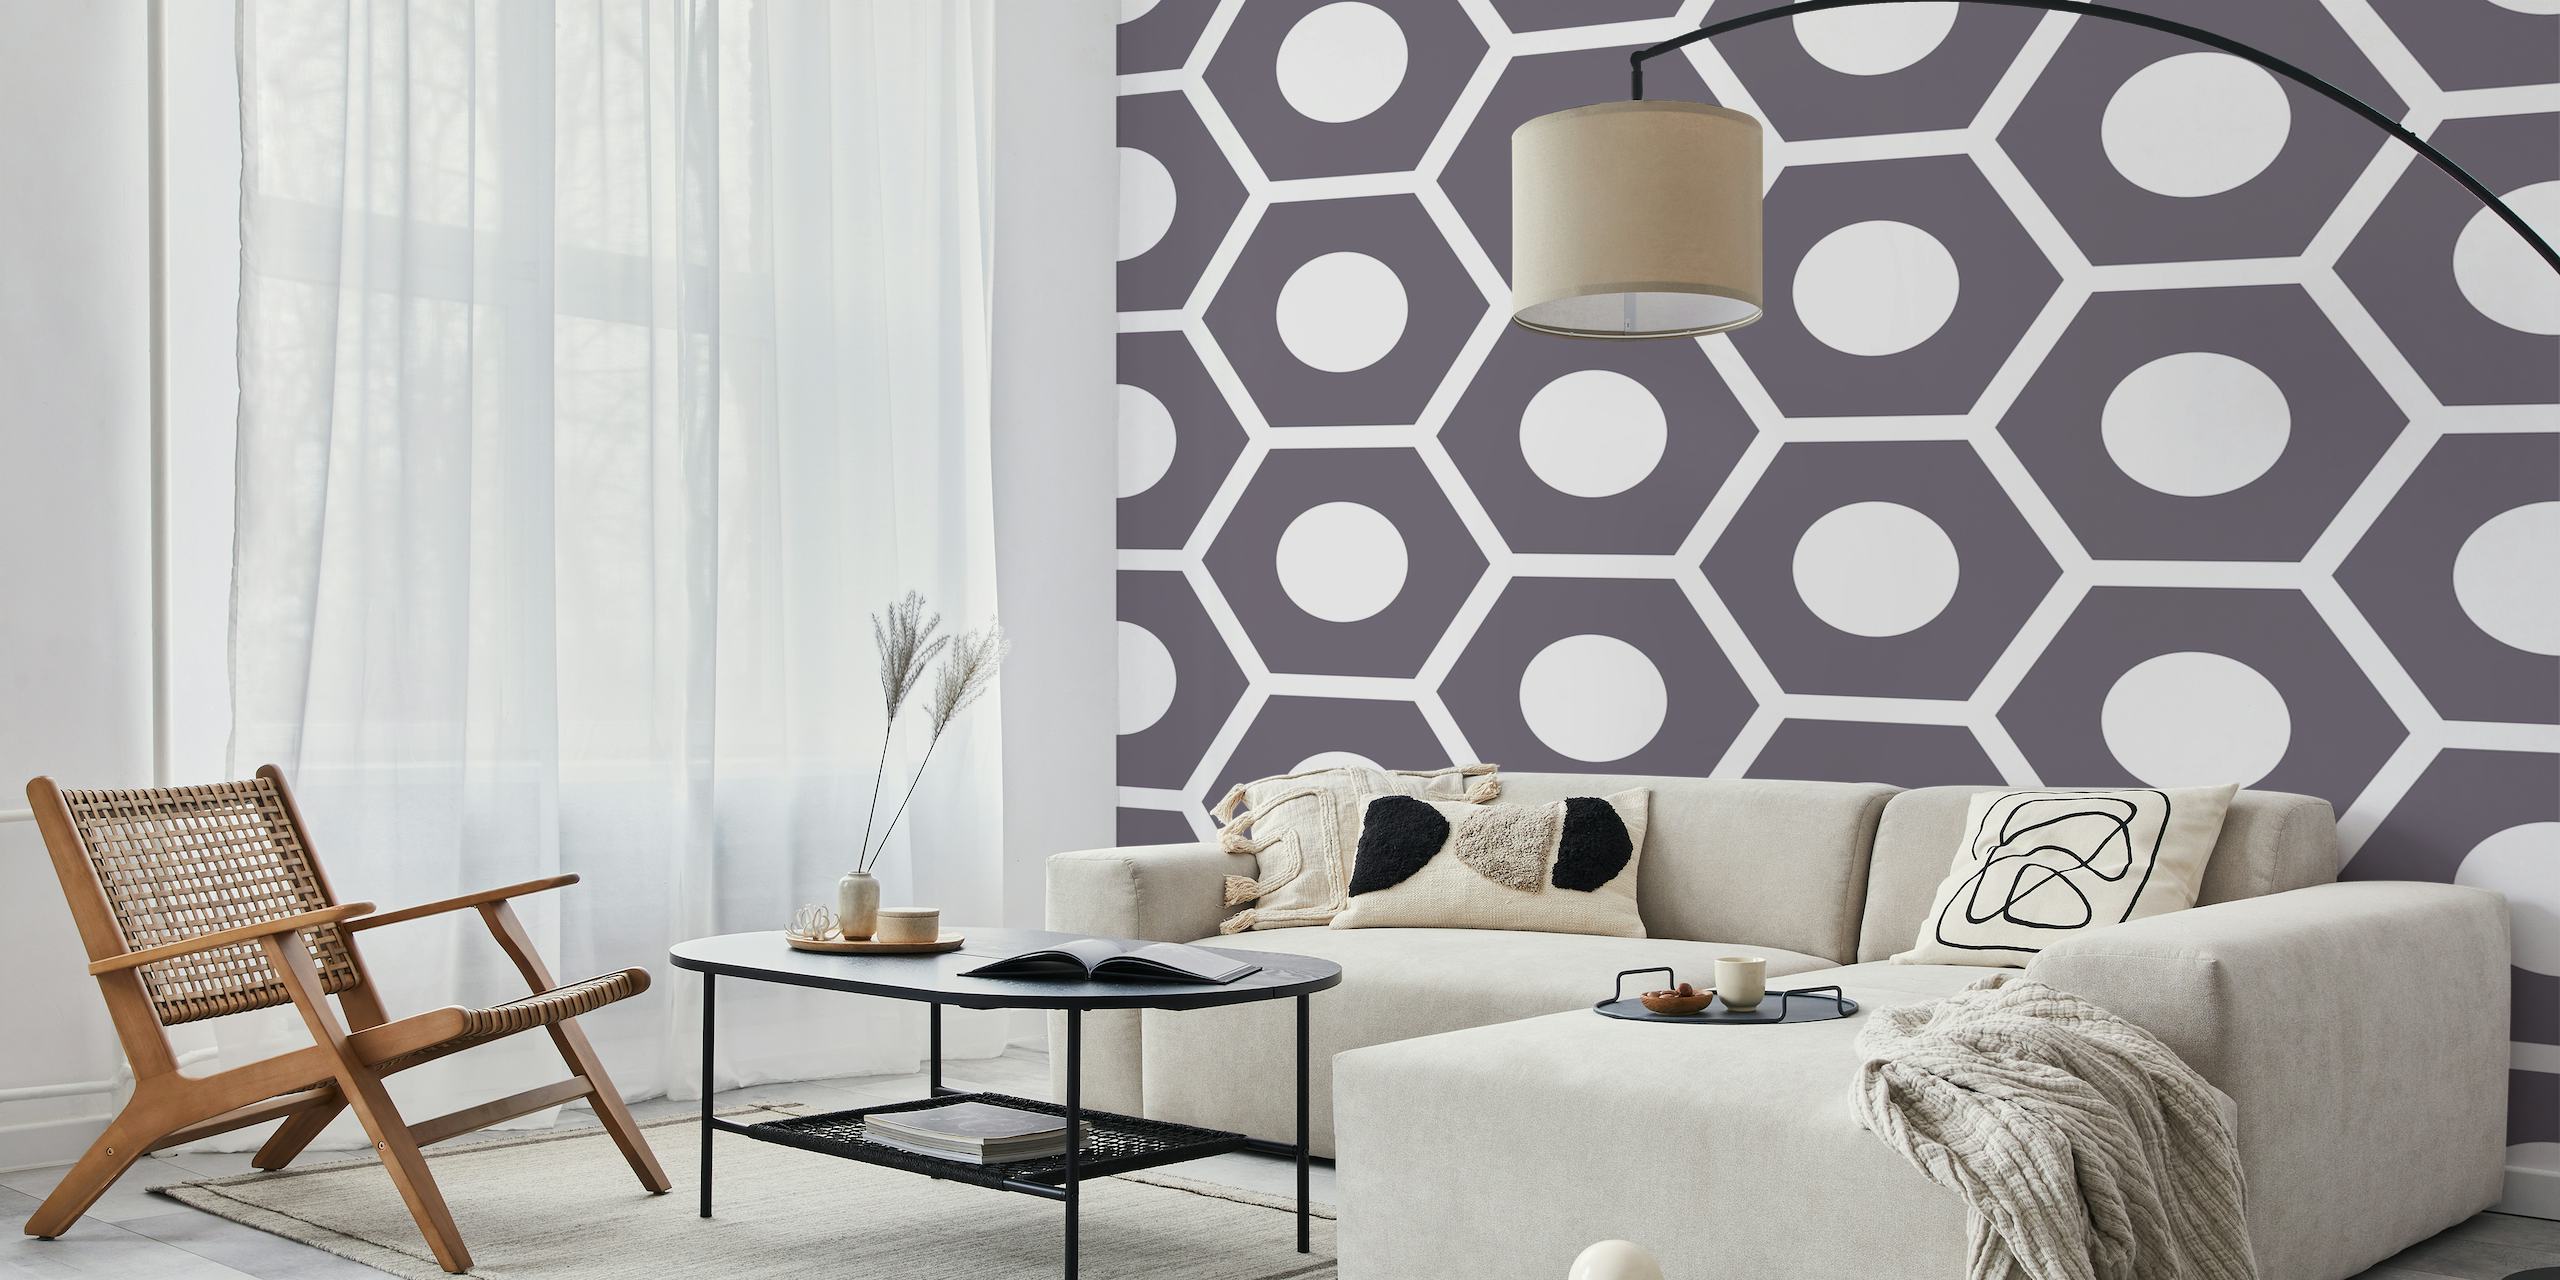 Tweekleurige muurschildering met zeshoekig patroon met grijs en wit geometrisch ontwerp.